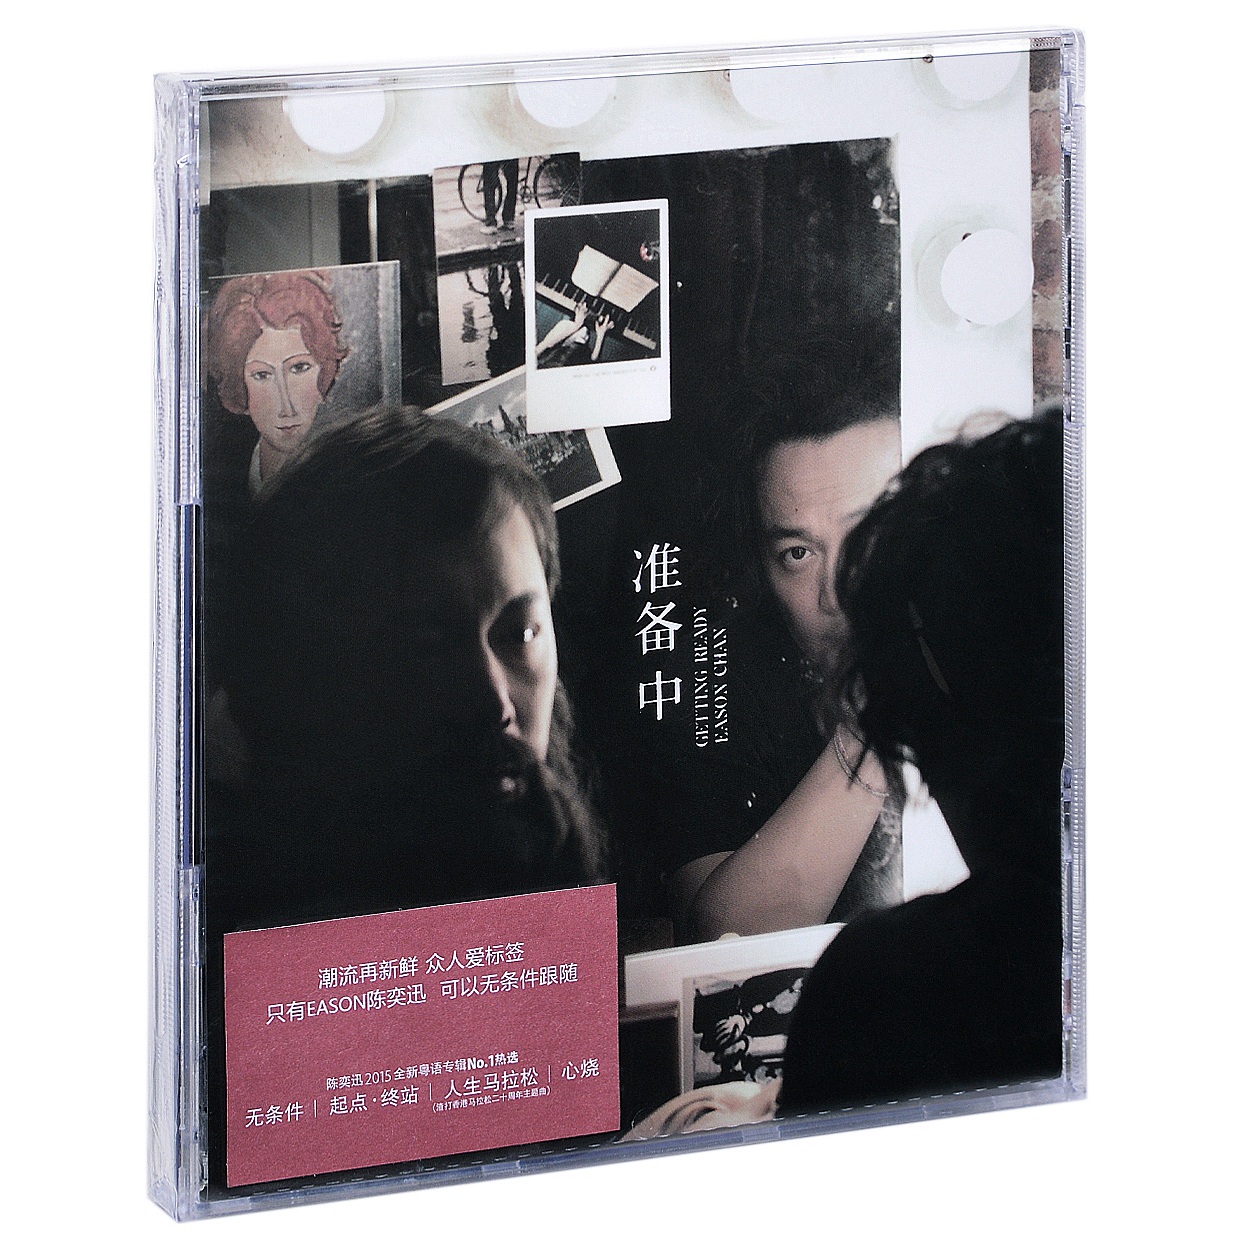 正版唱片 陈奕迅2015年粤语专辑 准备中 CD+写真歌词本